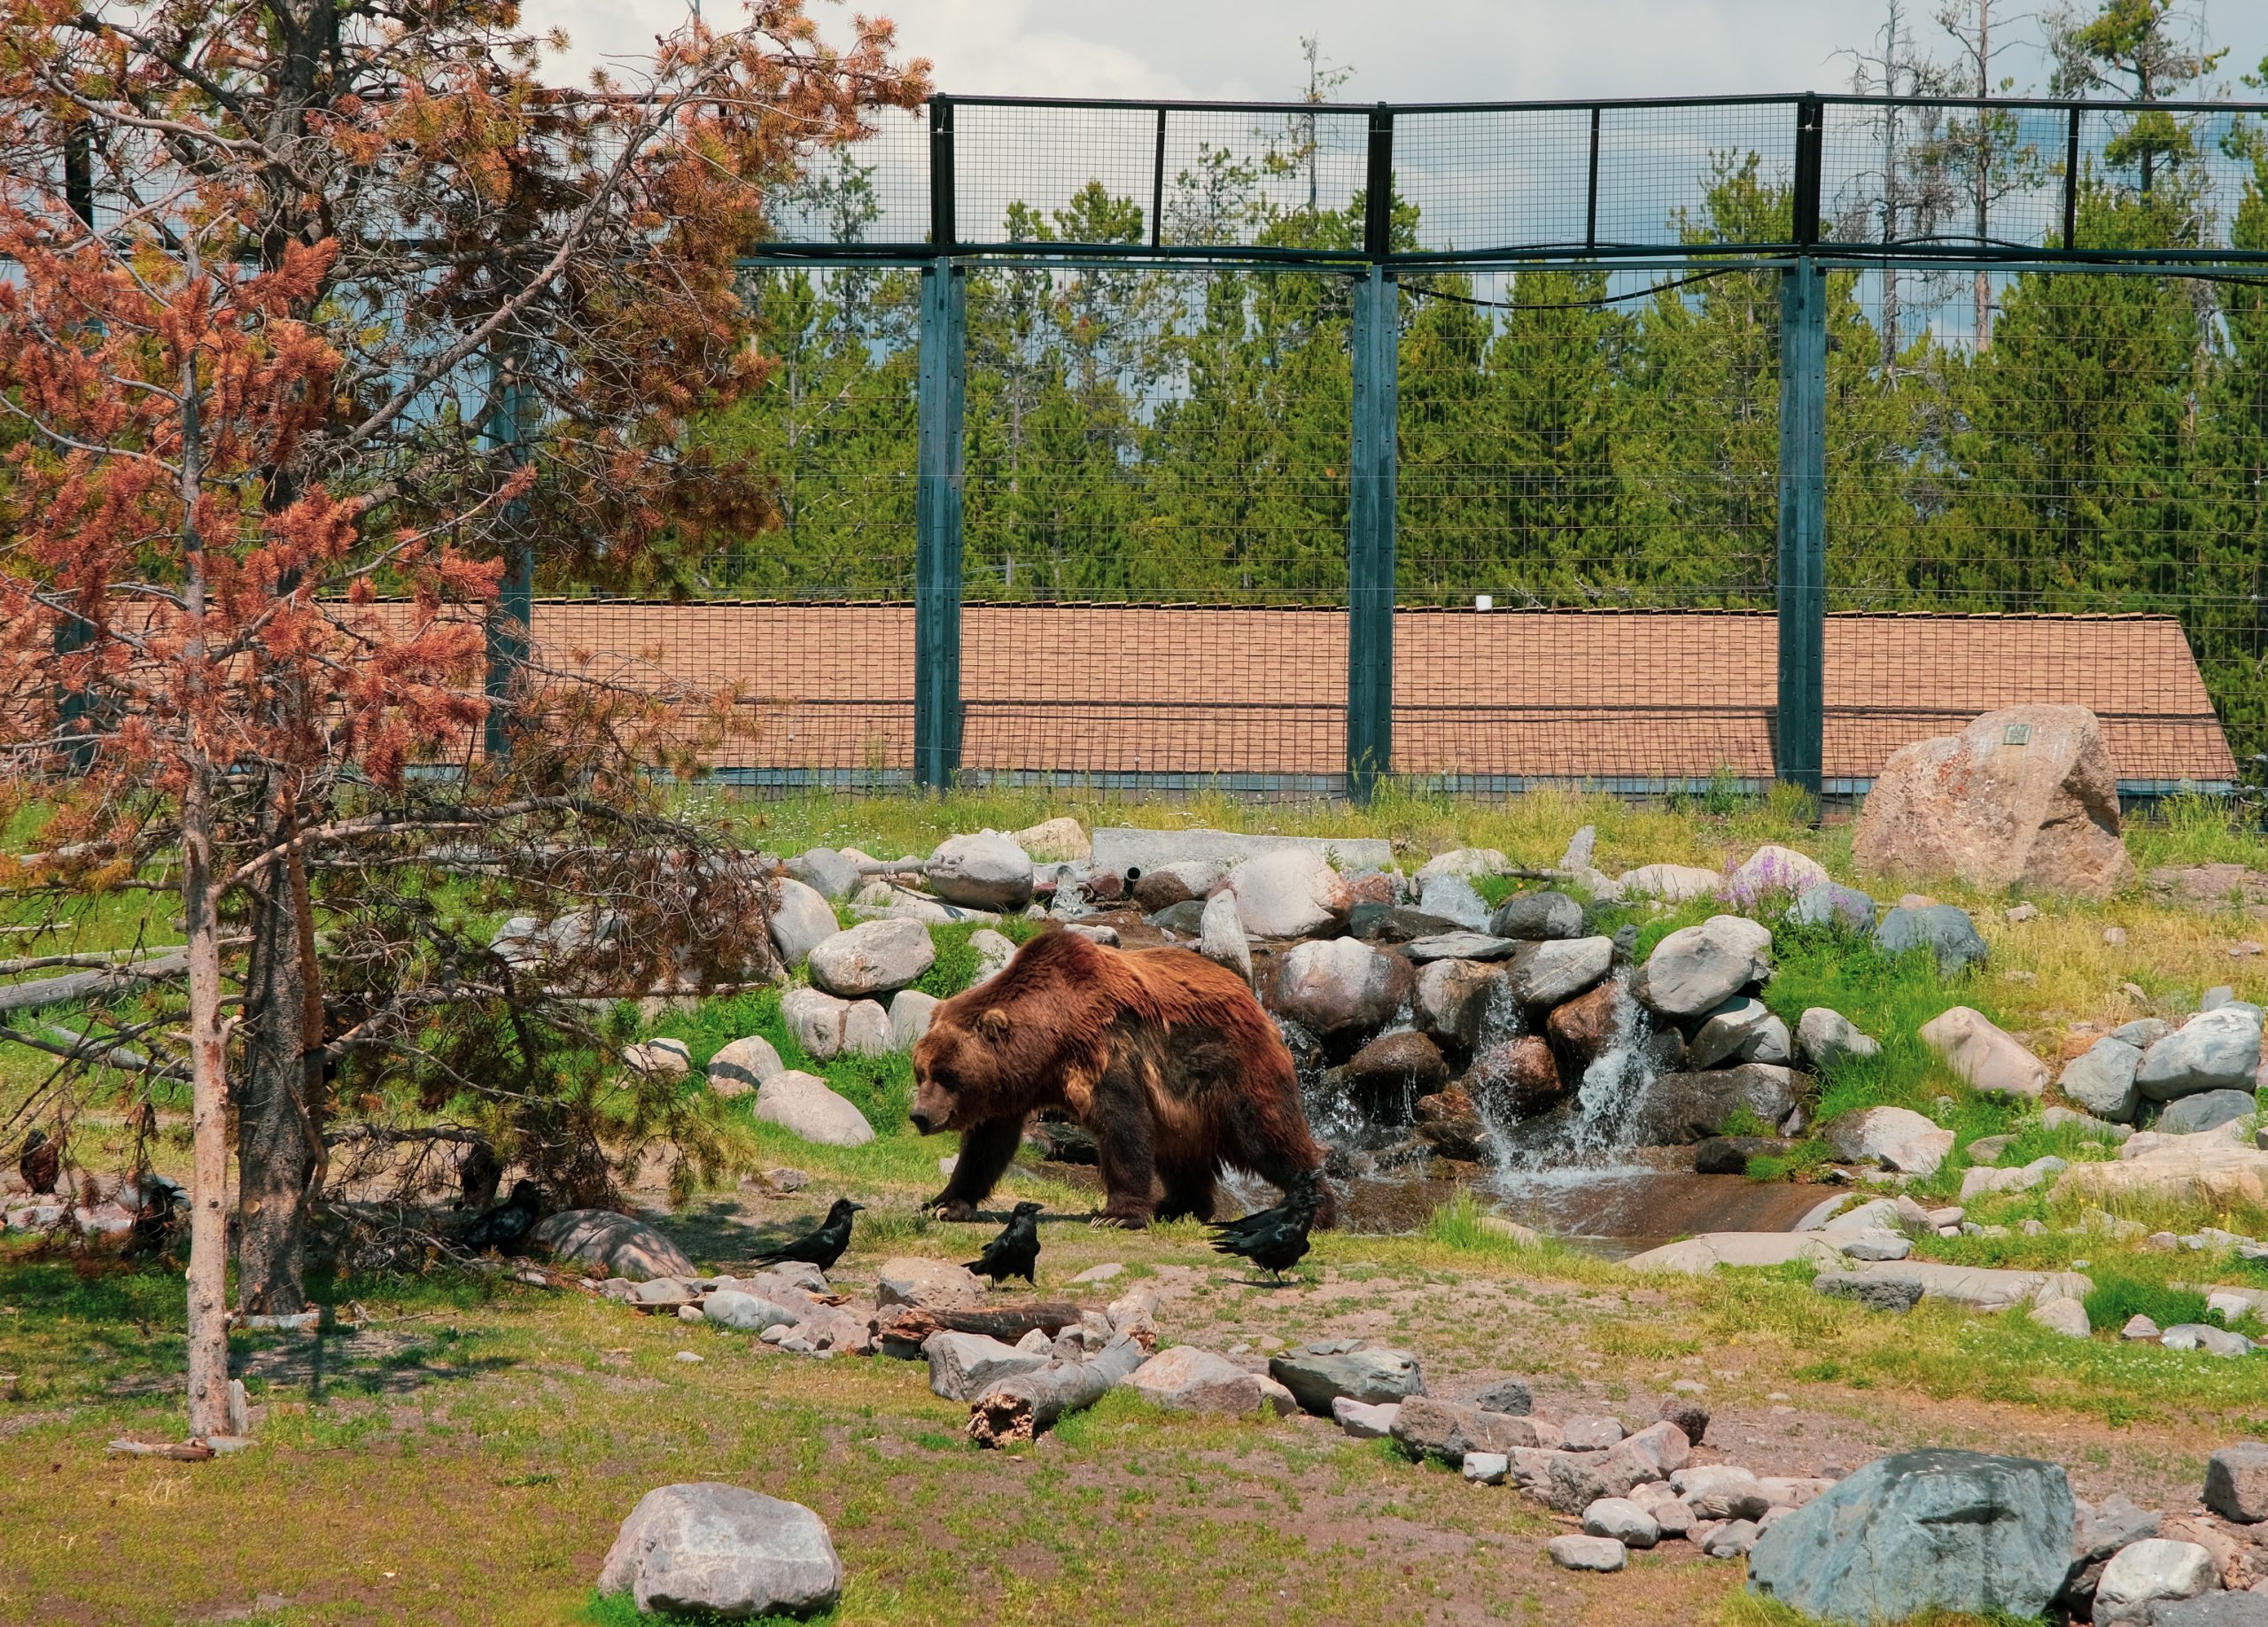 De grootste grizzly beer in het Grizzly en Wolf discovery Center, een dikke 475 kilo aan spierkracht